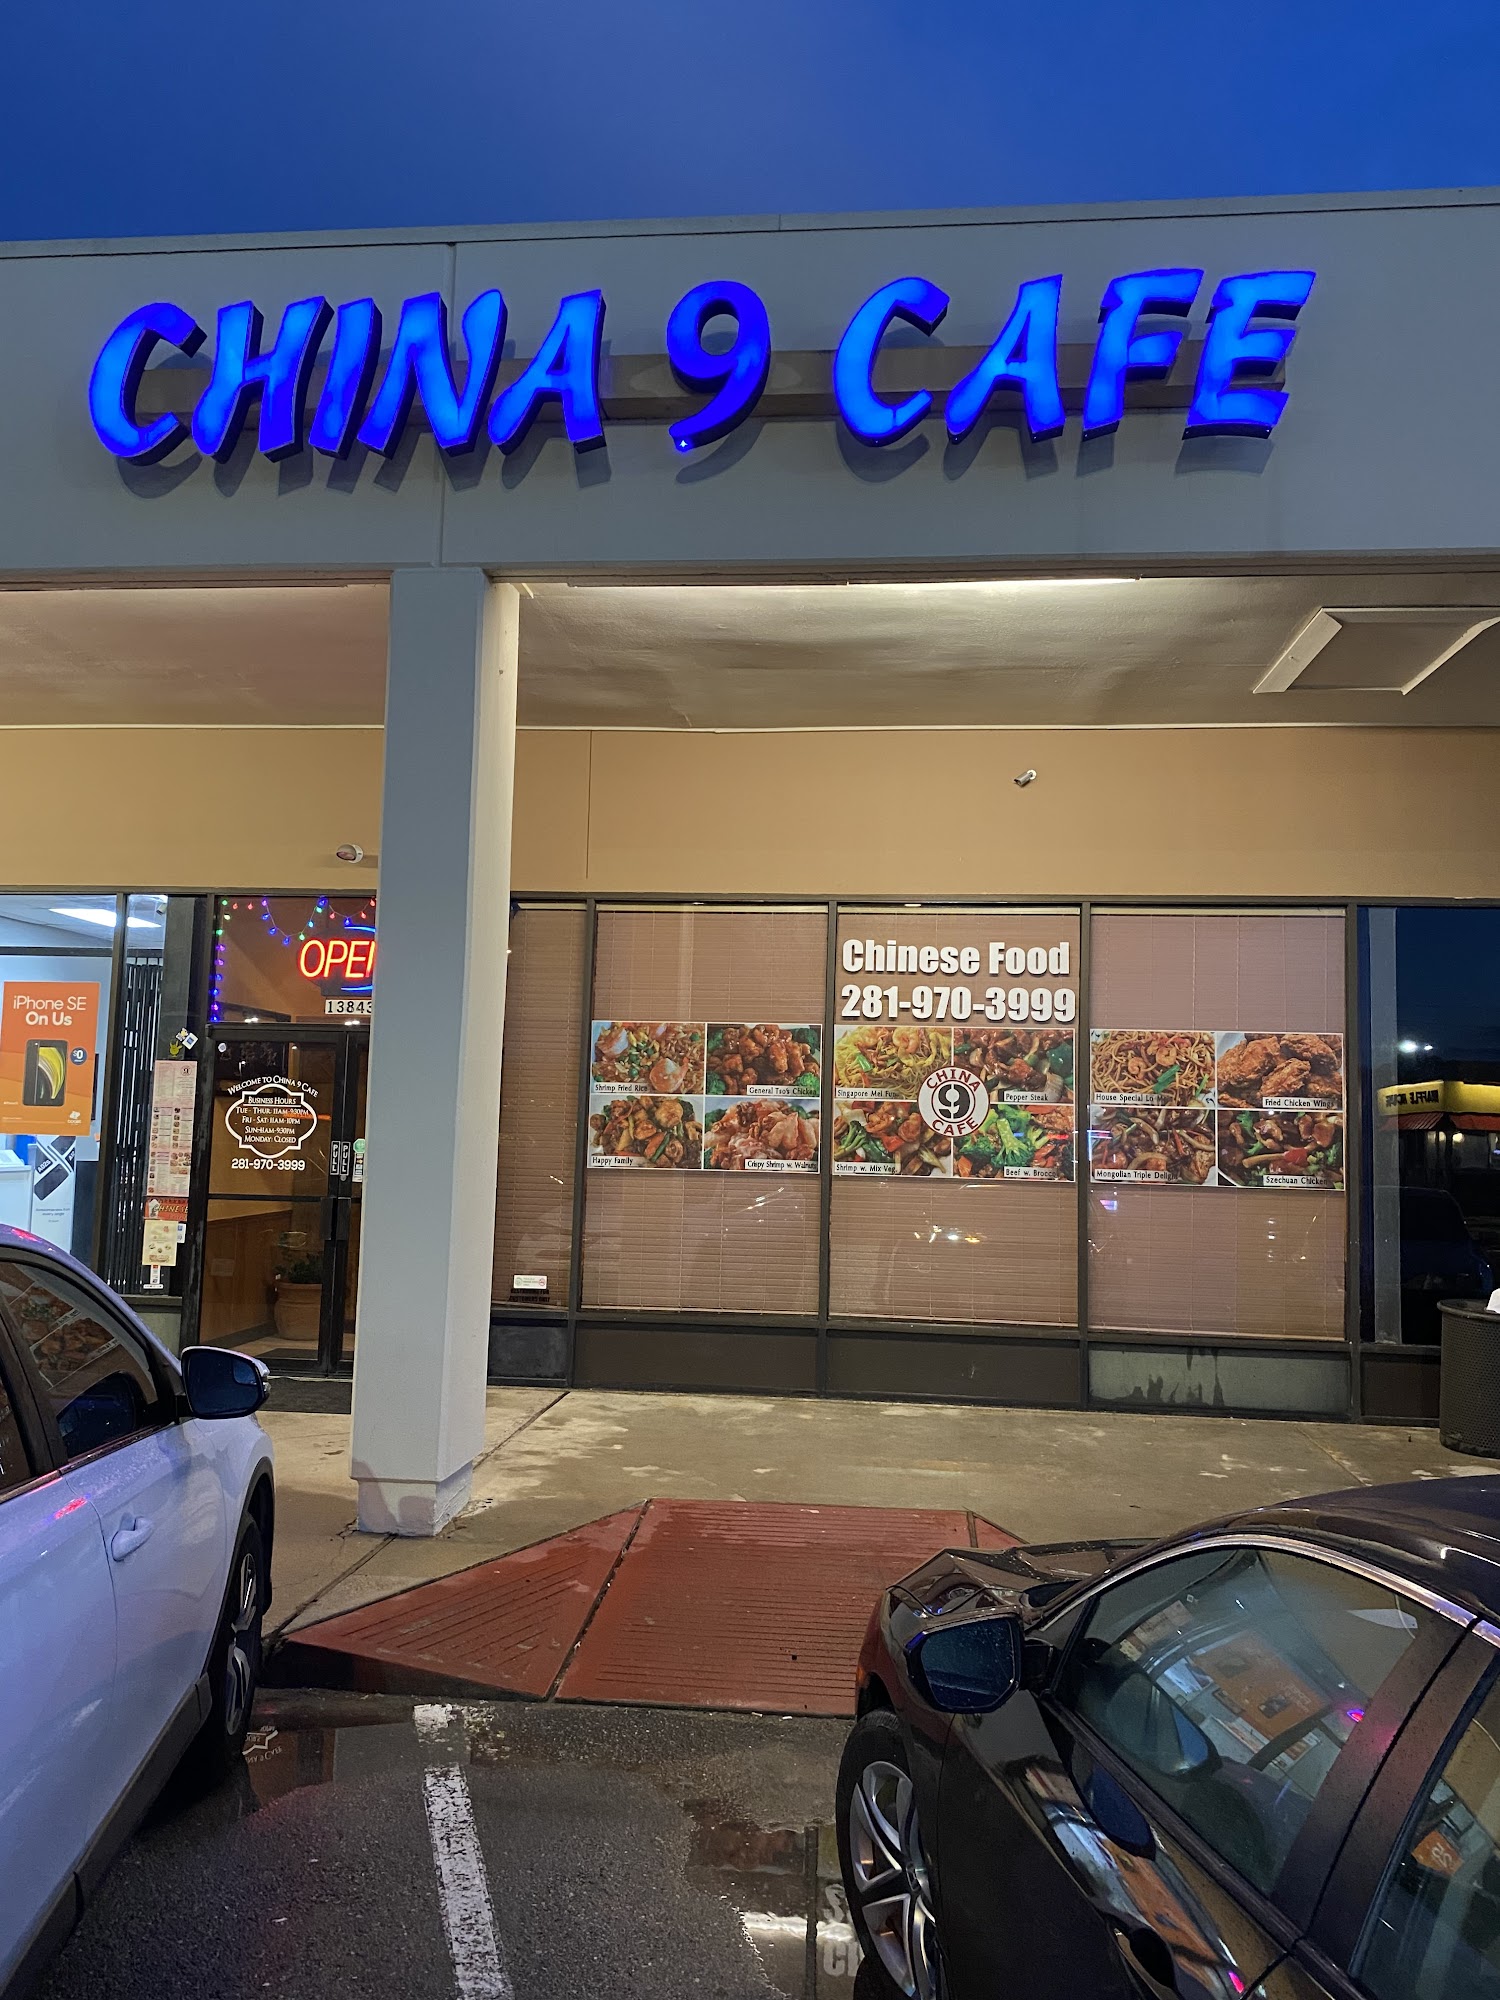 China 9 Cafe